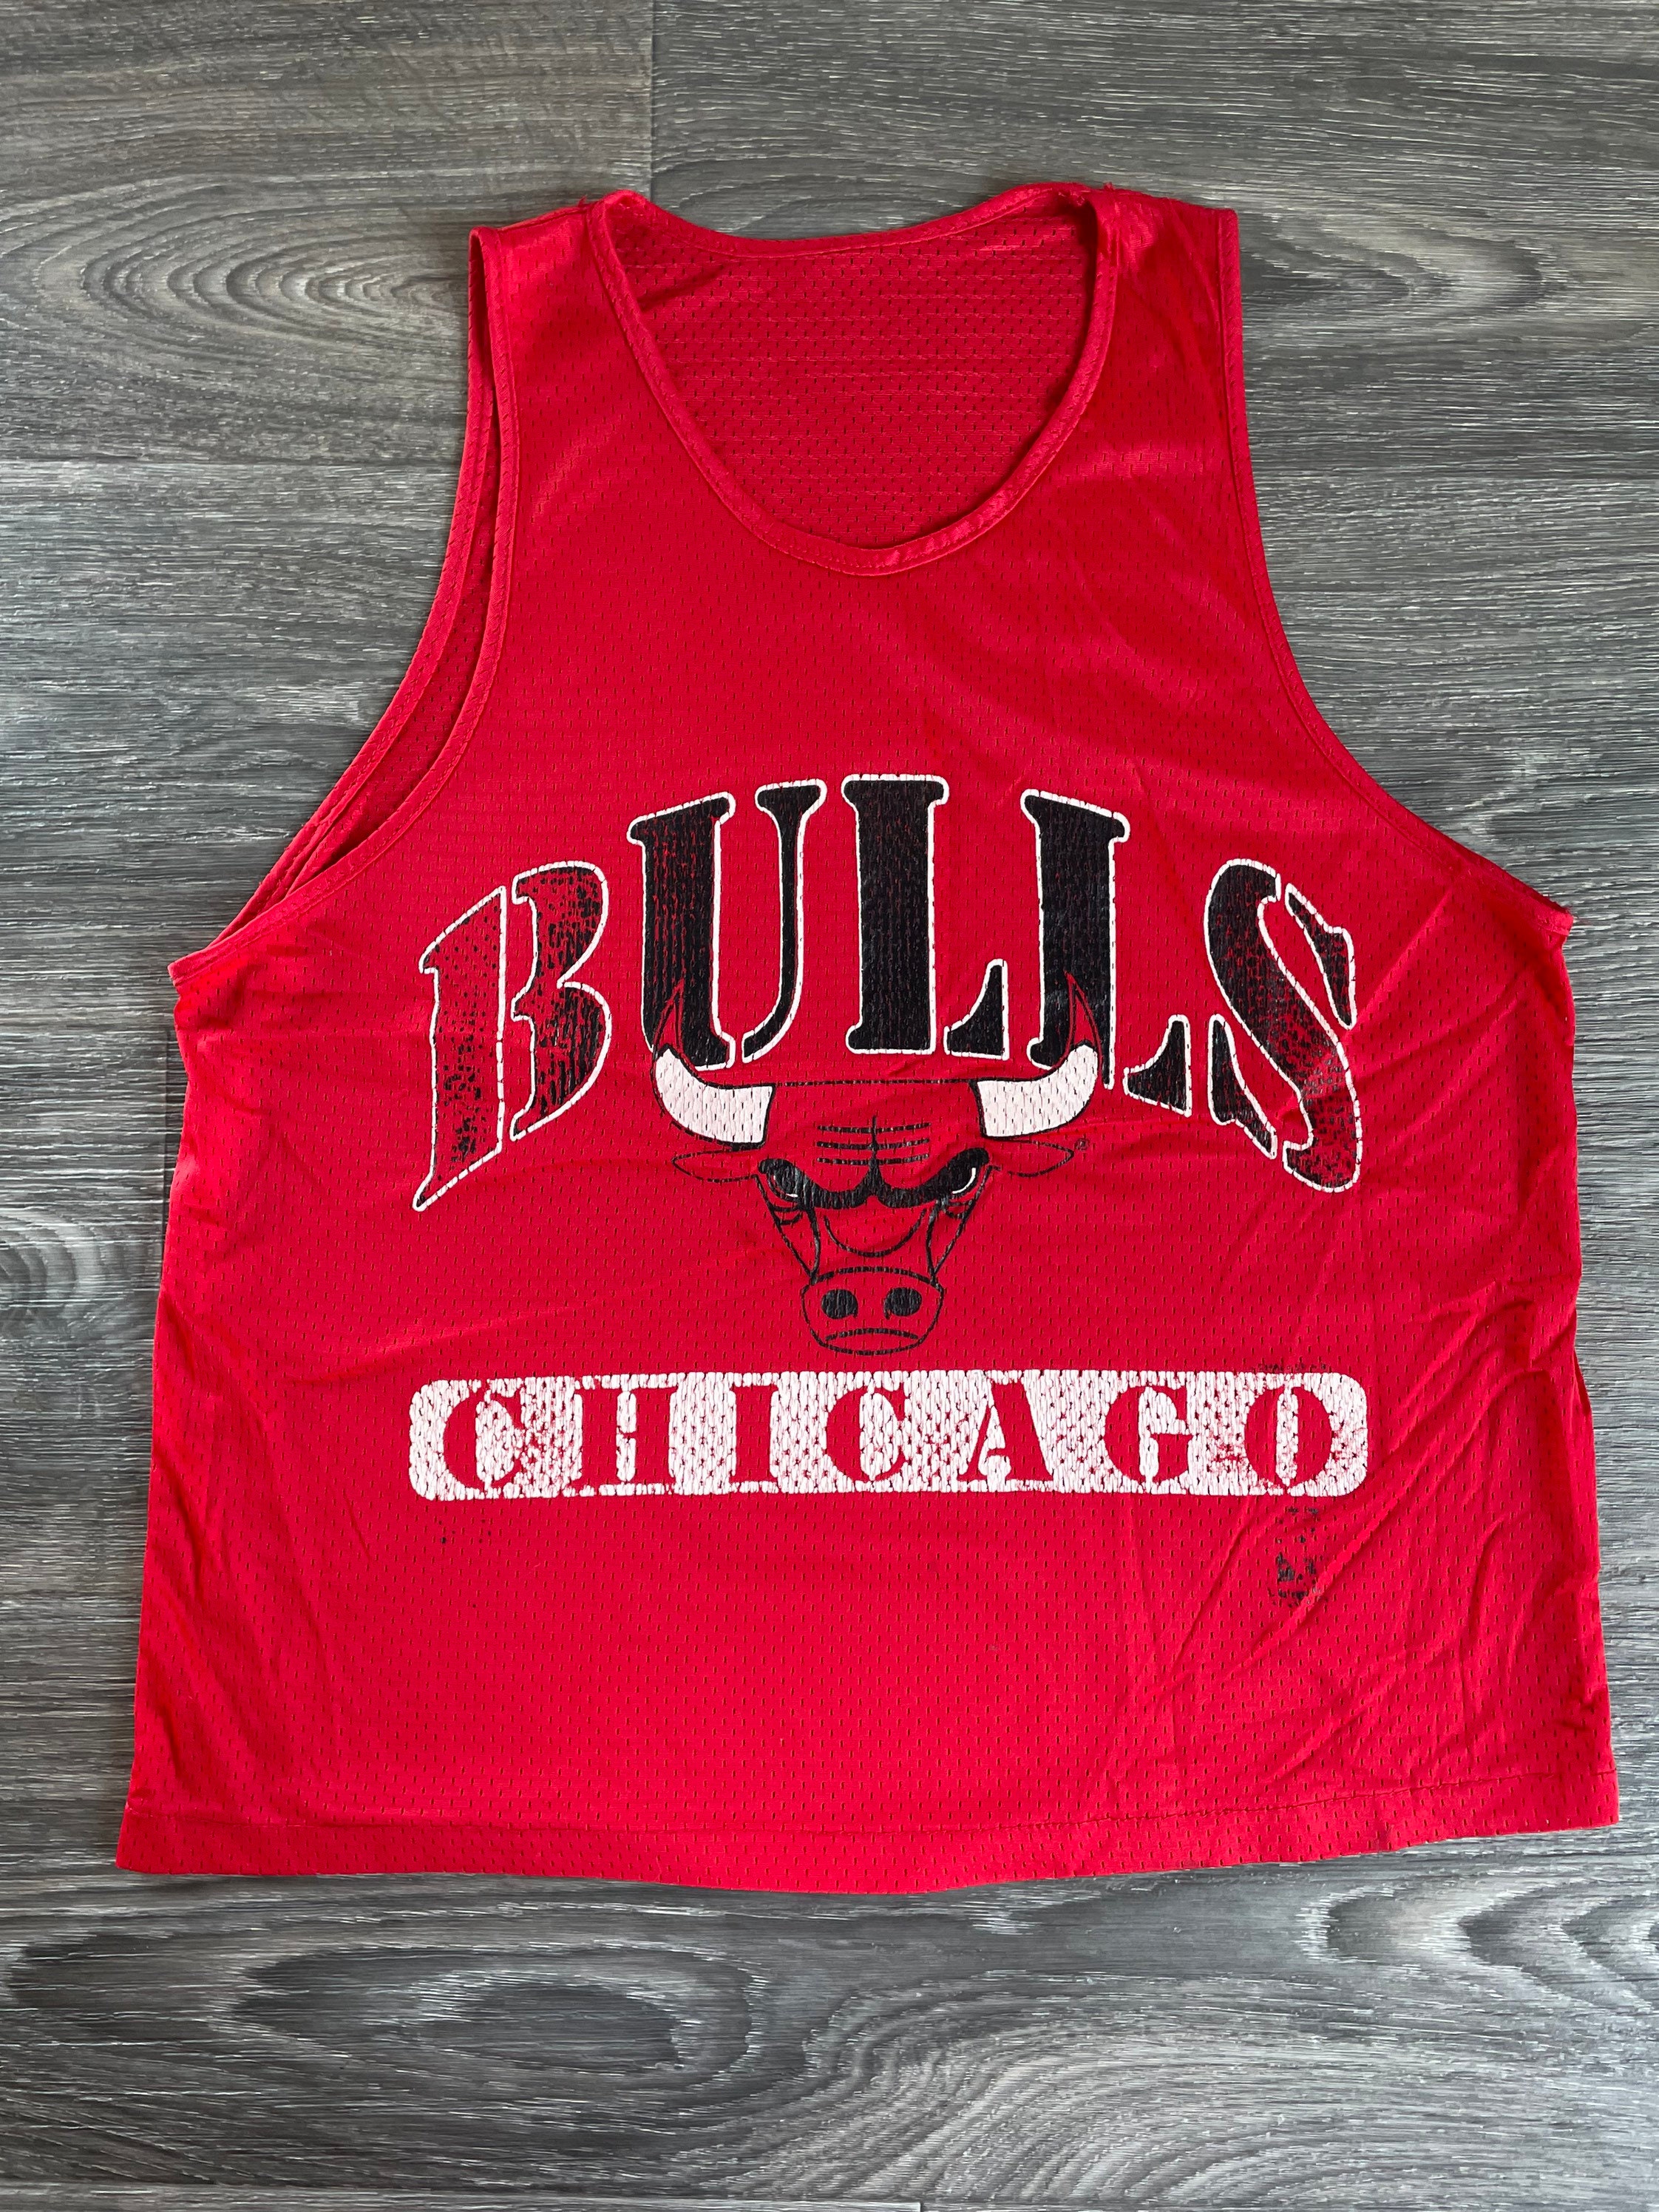 NBA, Tops, Chicago Bulls Crop Top Mesh Jersey